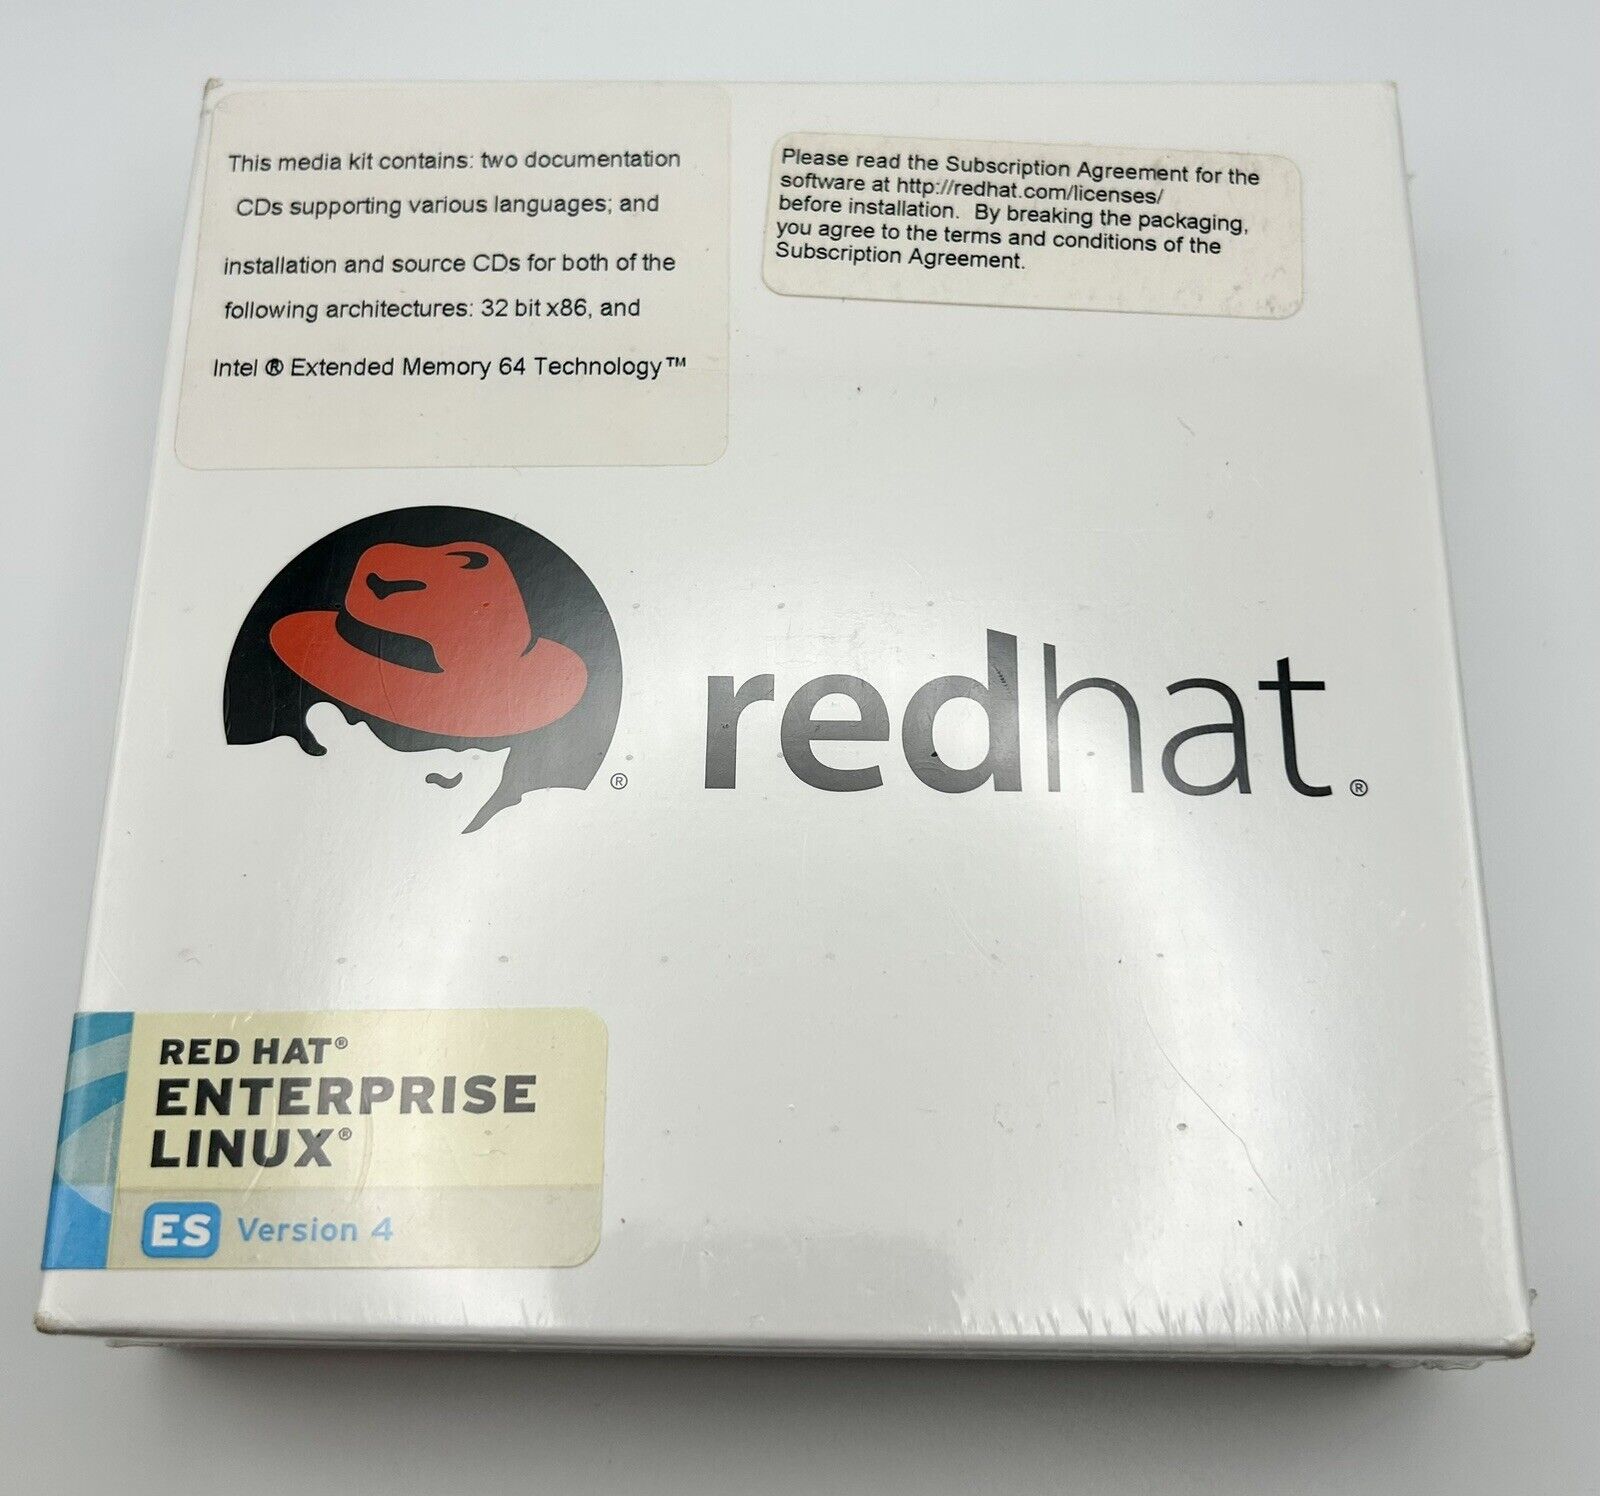 Red Hat Enterprise Linux ES Version 4, New, Sealed.